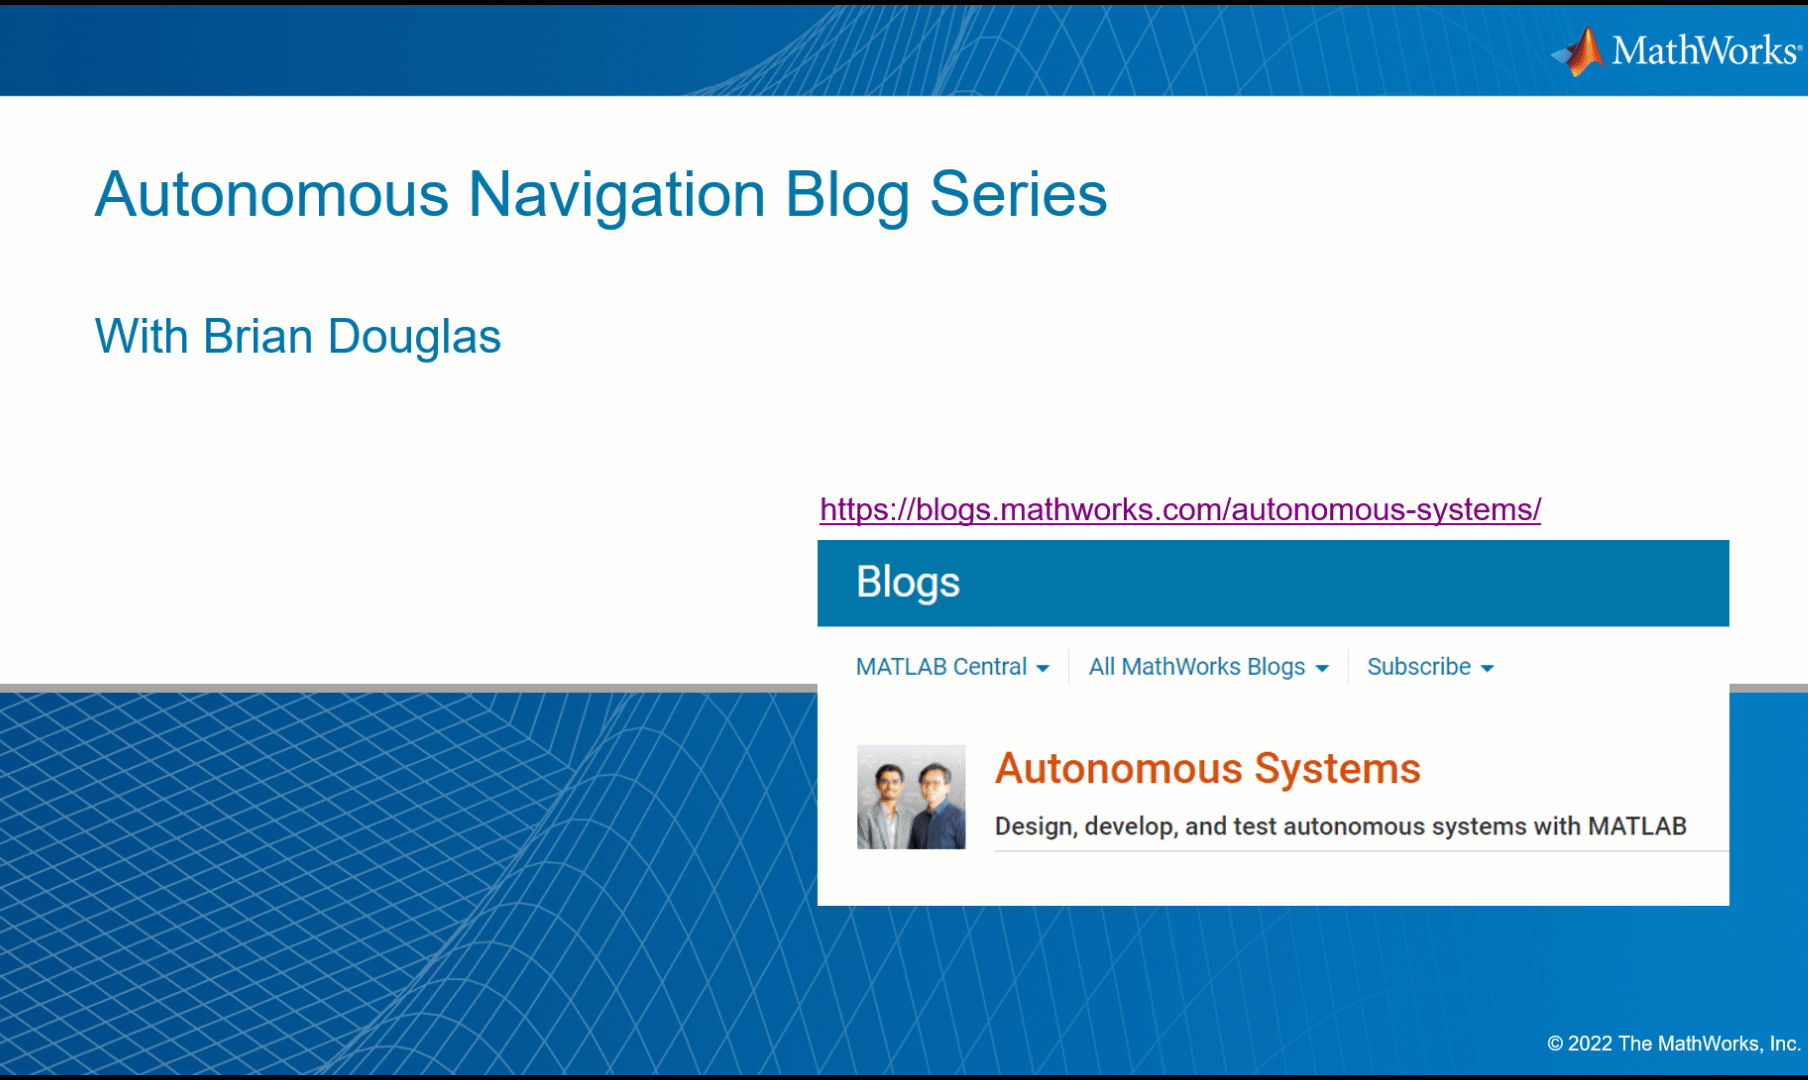 Autonomous Navigation Blog Series Content